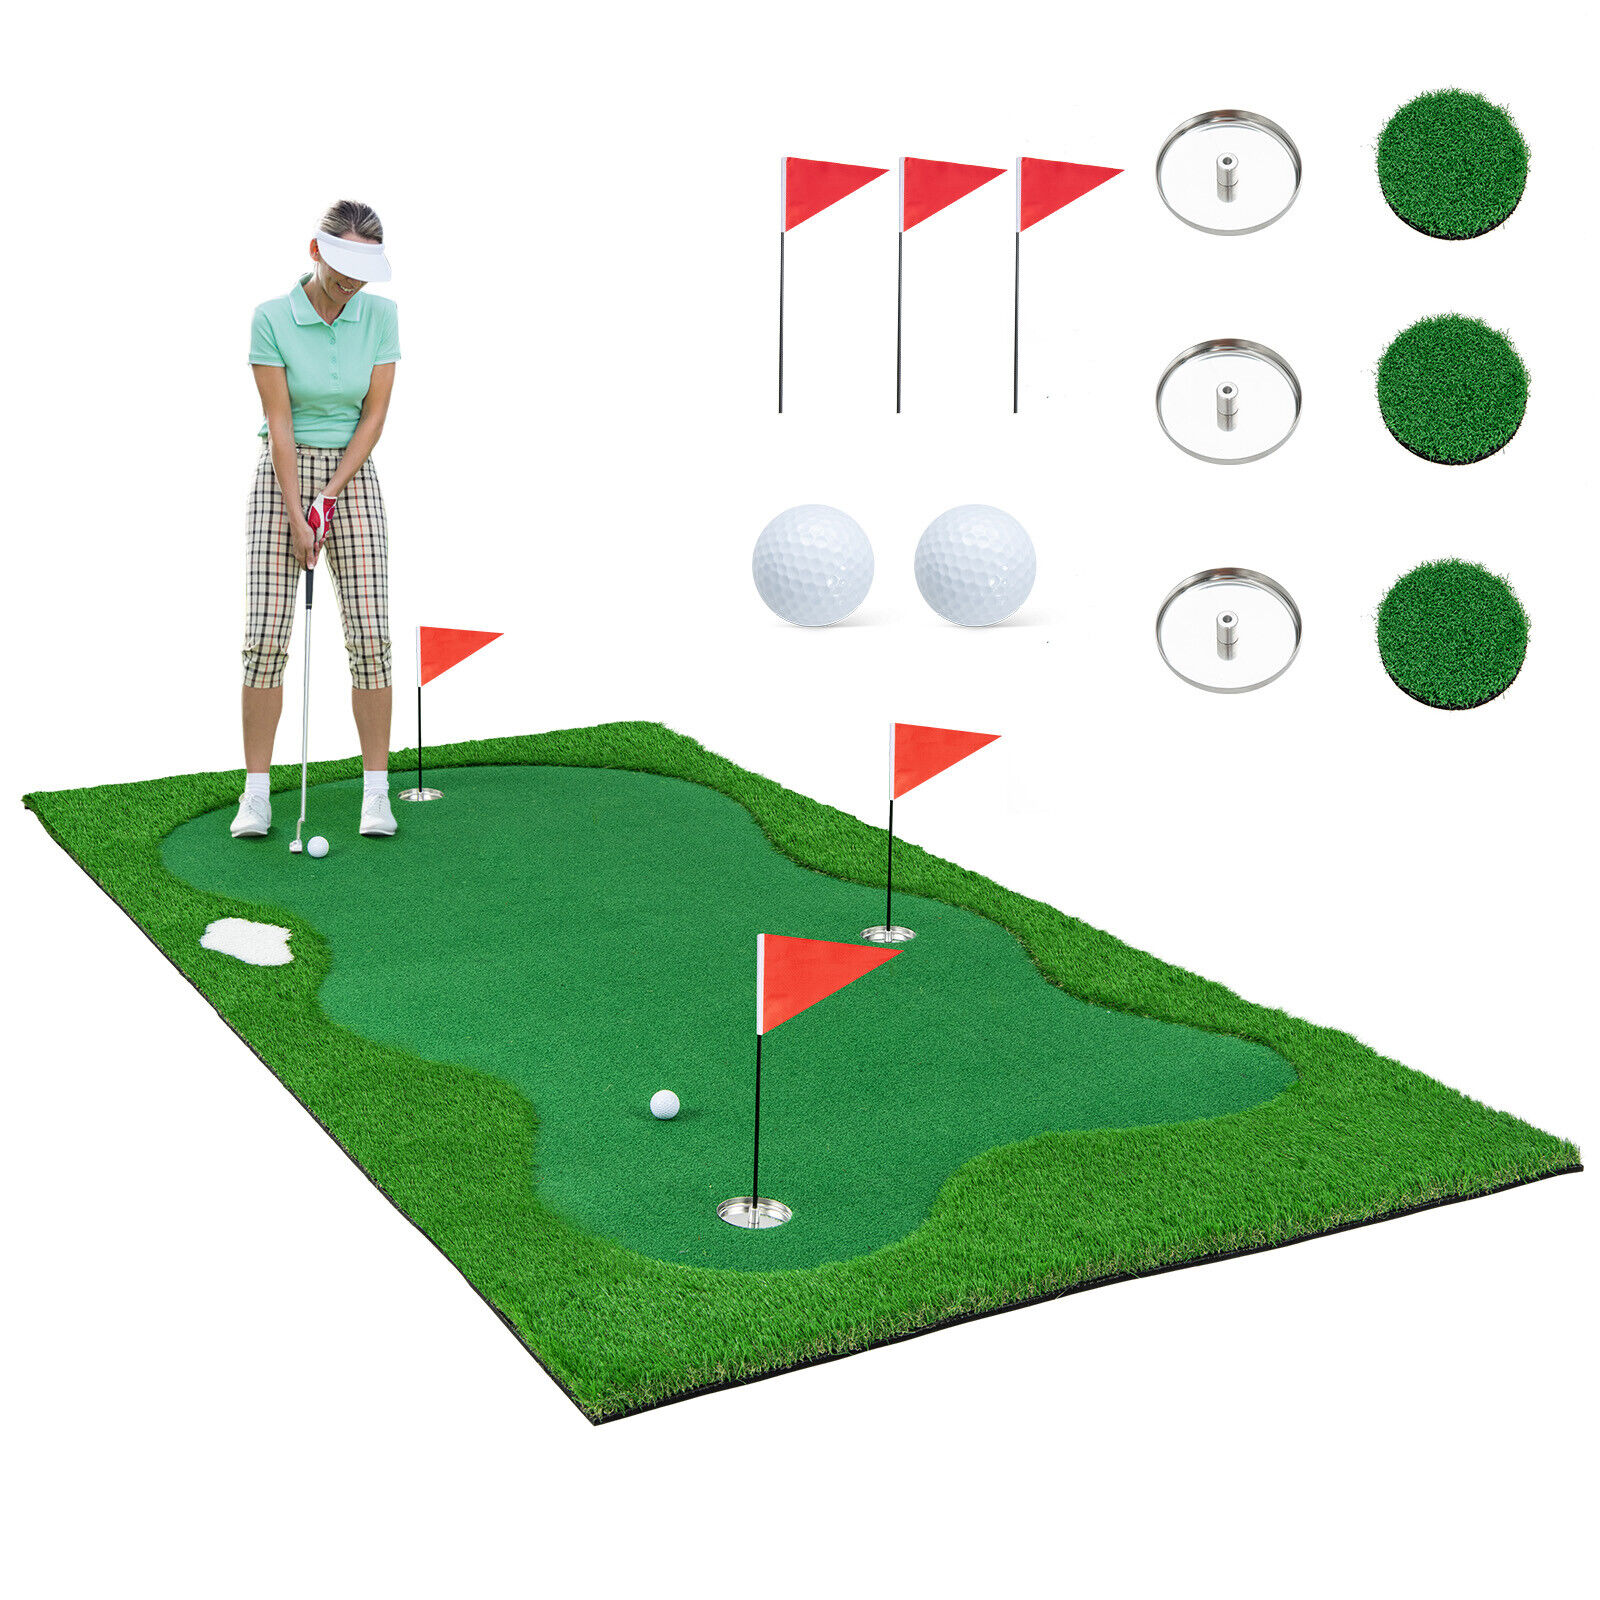 10 x 5 FT Golf Putting Green Professional Golf Training Mat w/ 2 Golf Balls